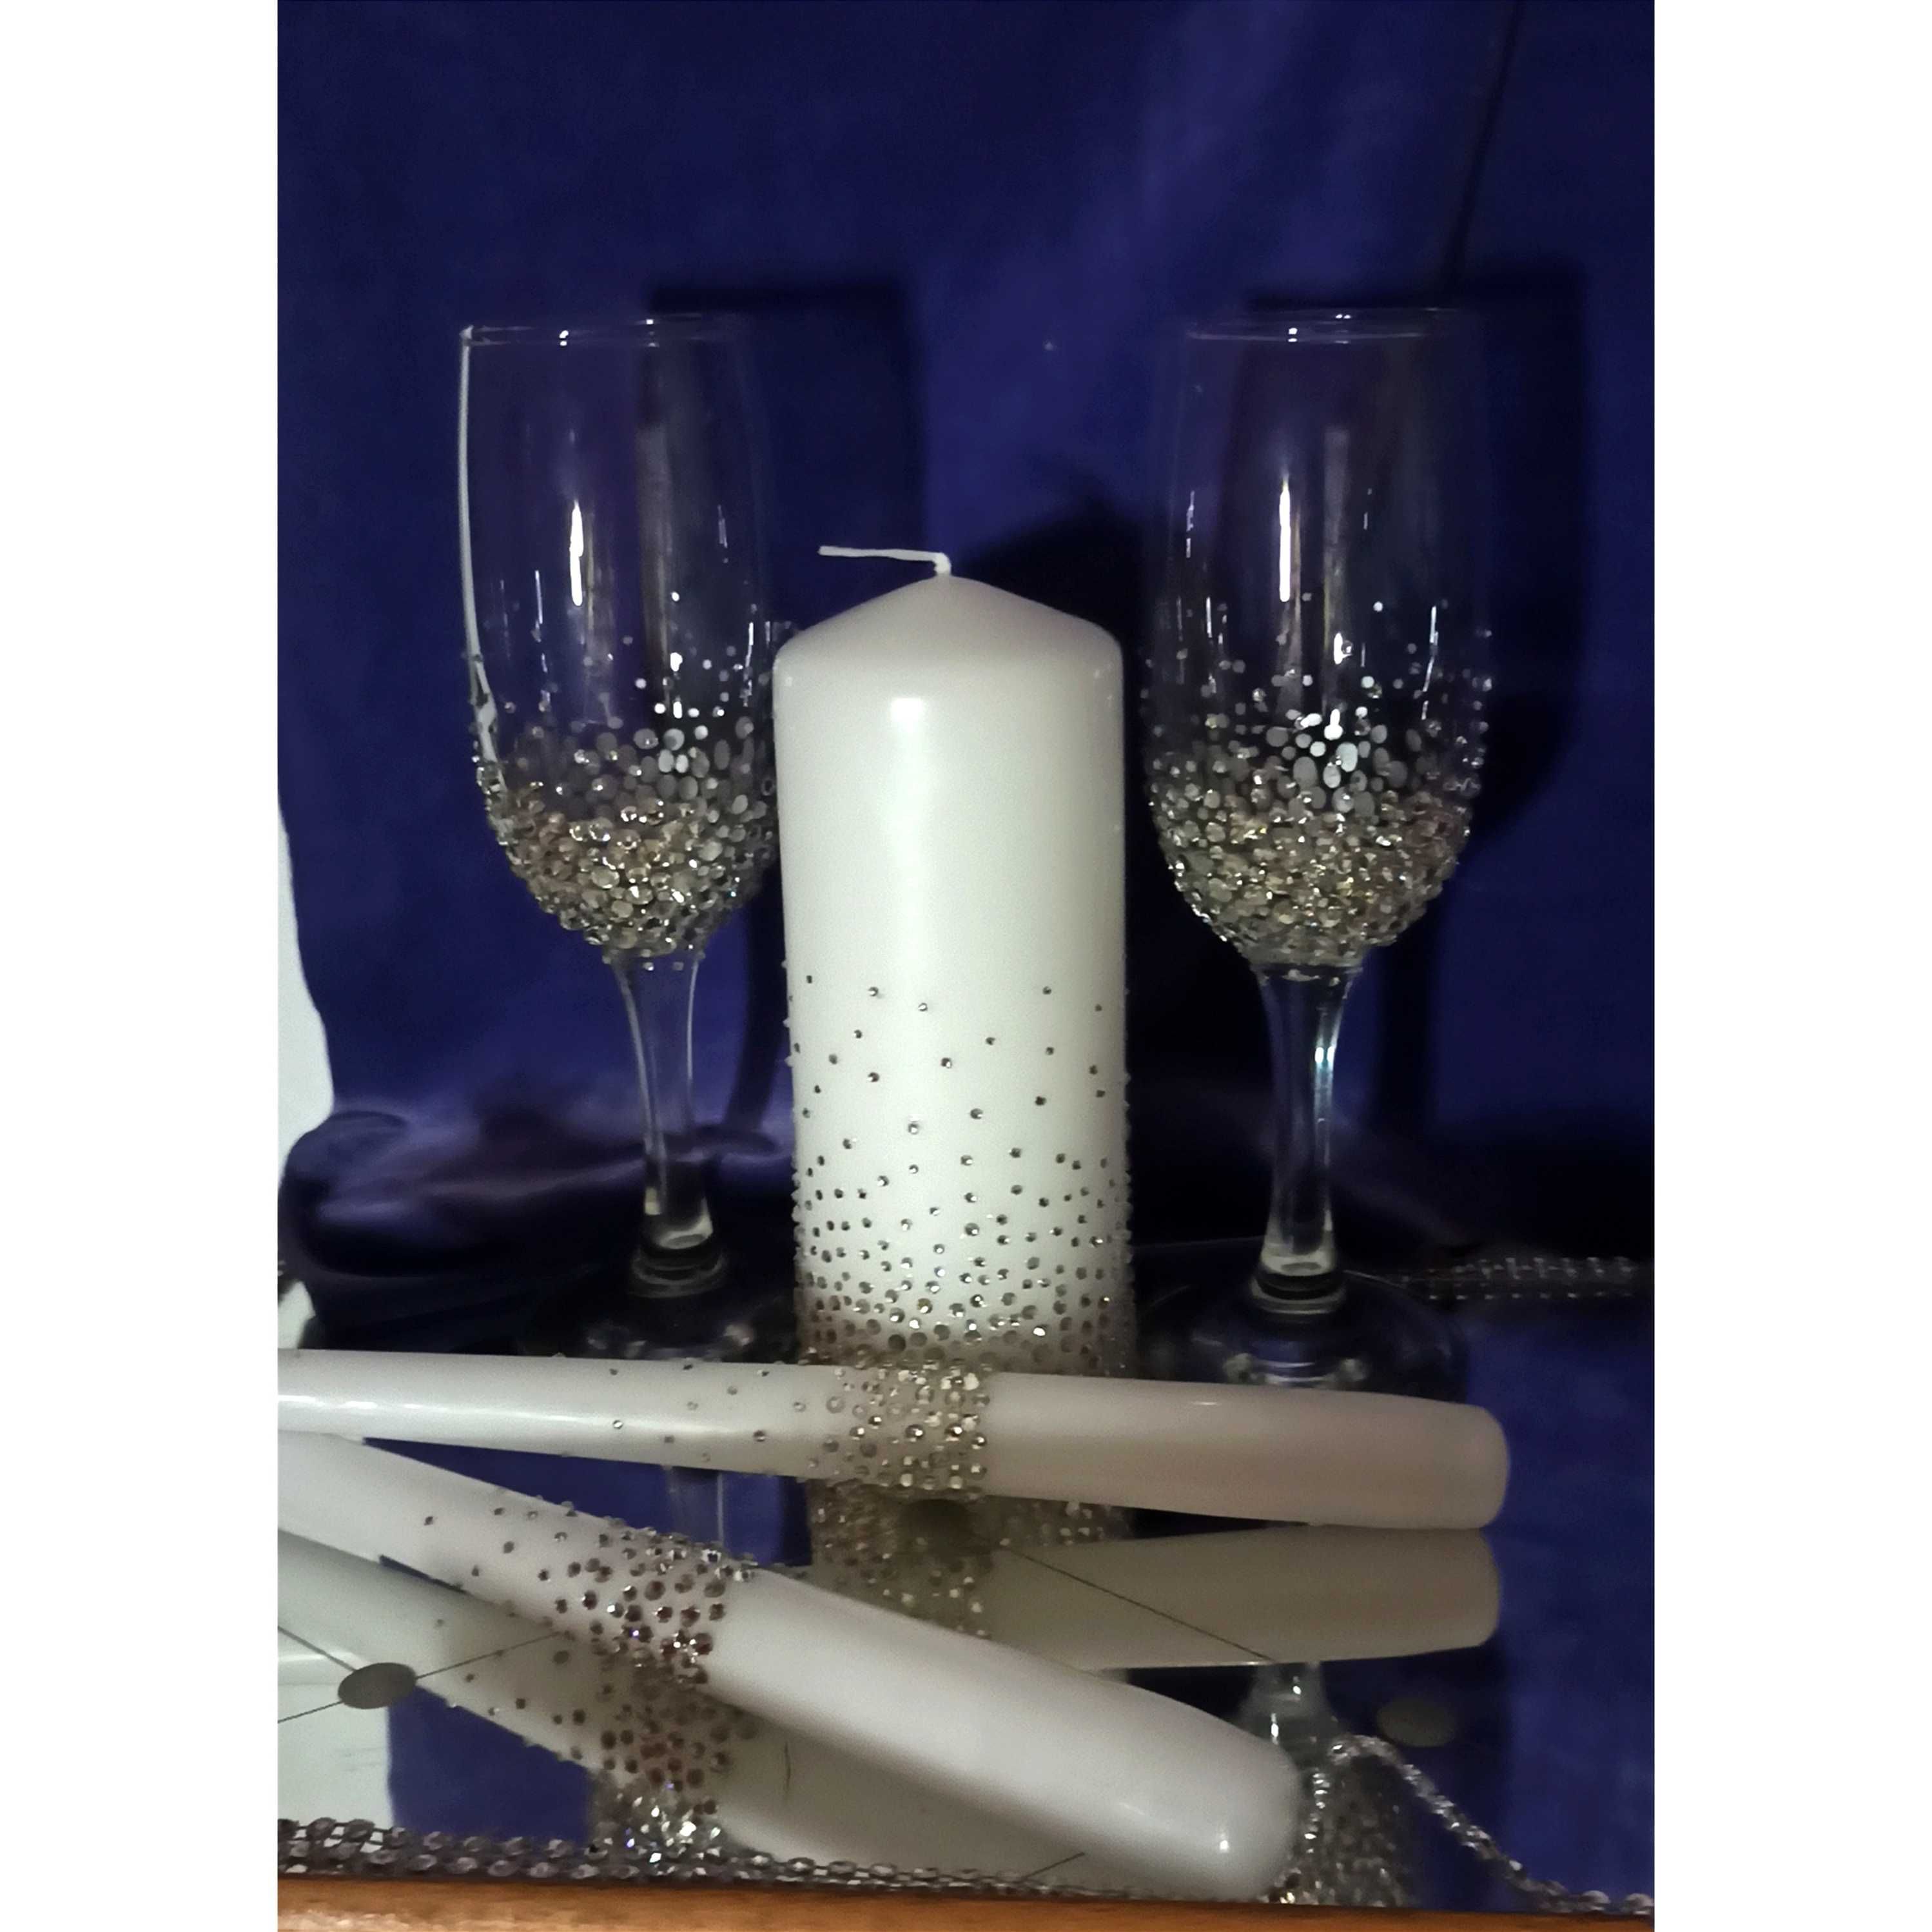 Шикарний набір весільних свічок, сімейне вогнище,аксесуари. Пишіть